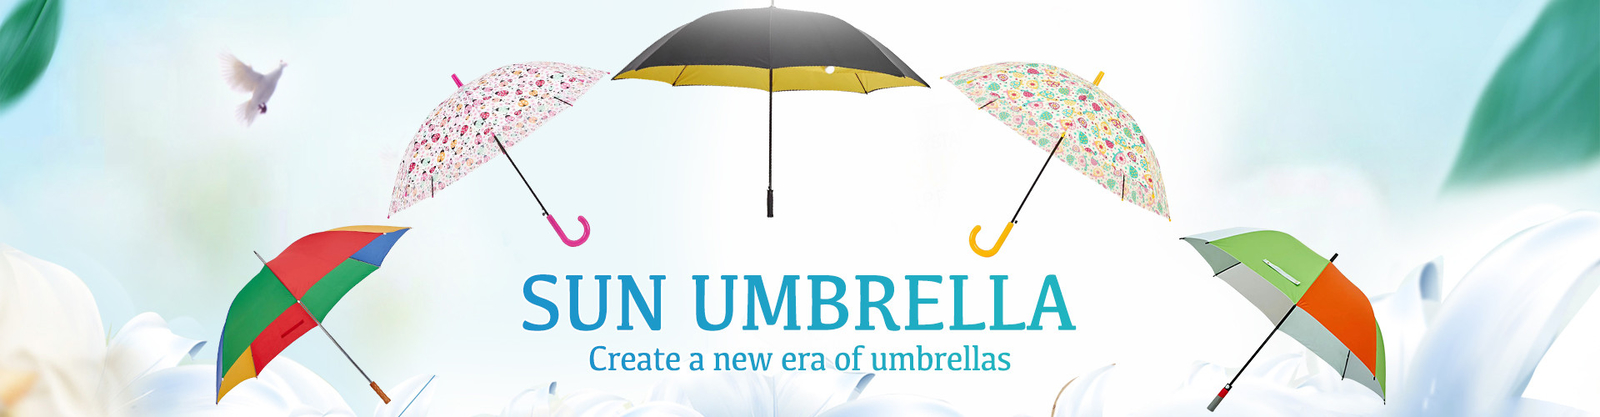 مظلة الغولف المدمجة